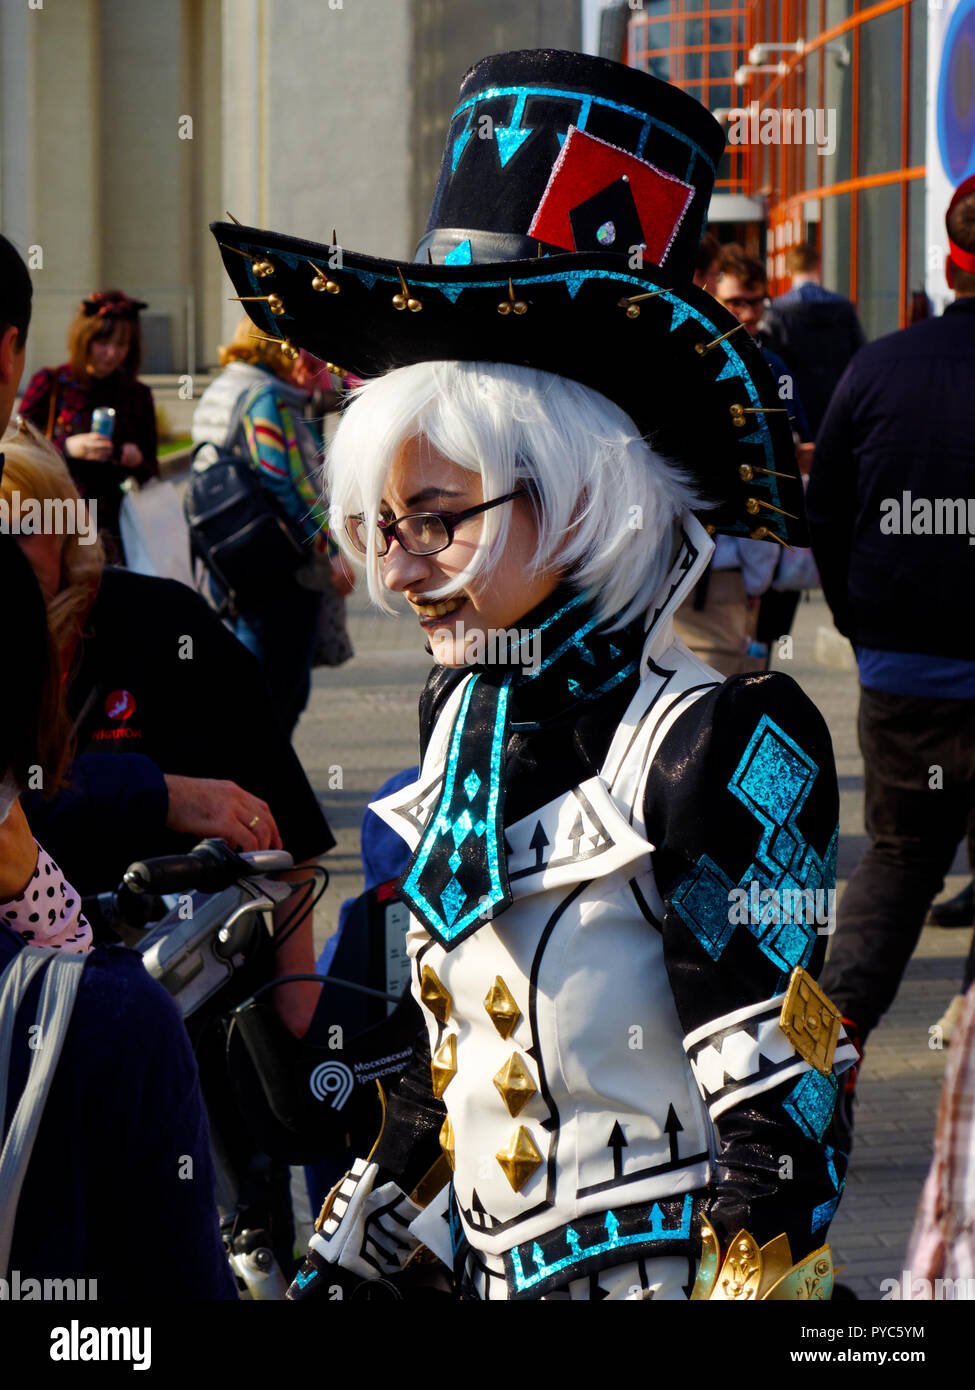 Cosplay festival participant, bright unusual costume Stock Photo